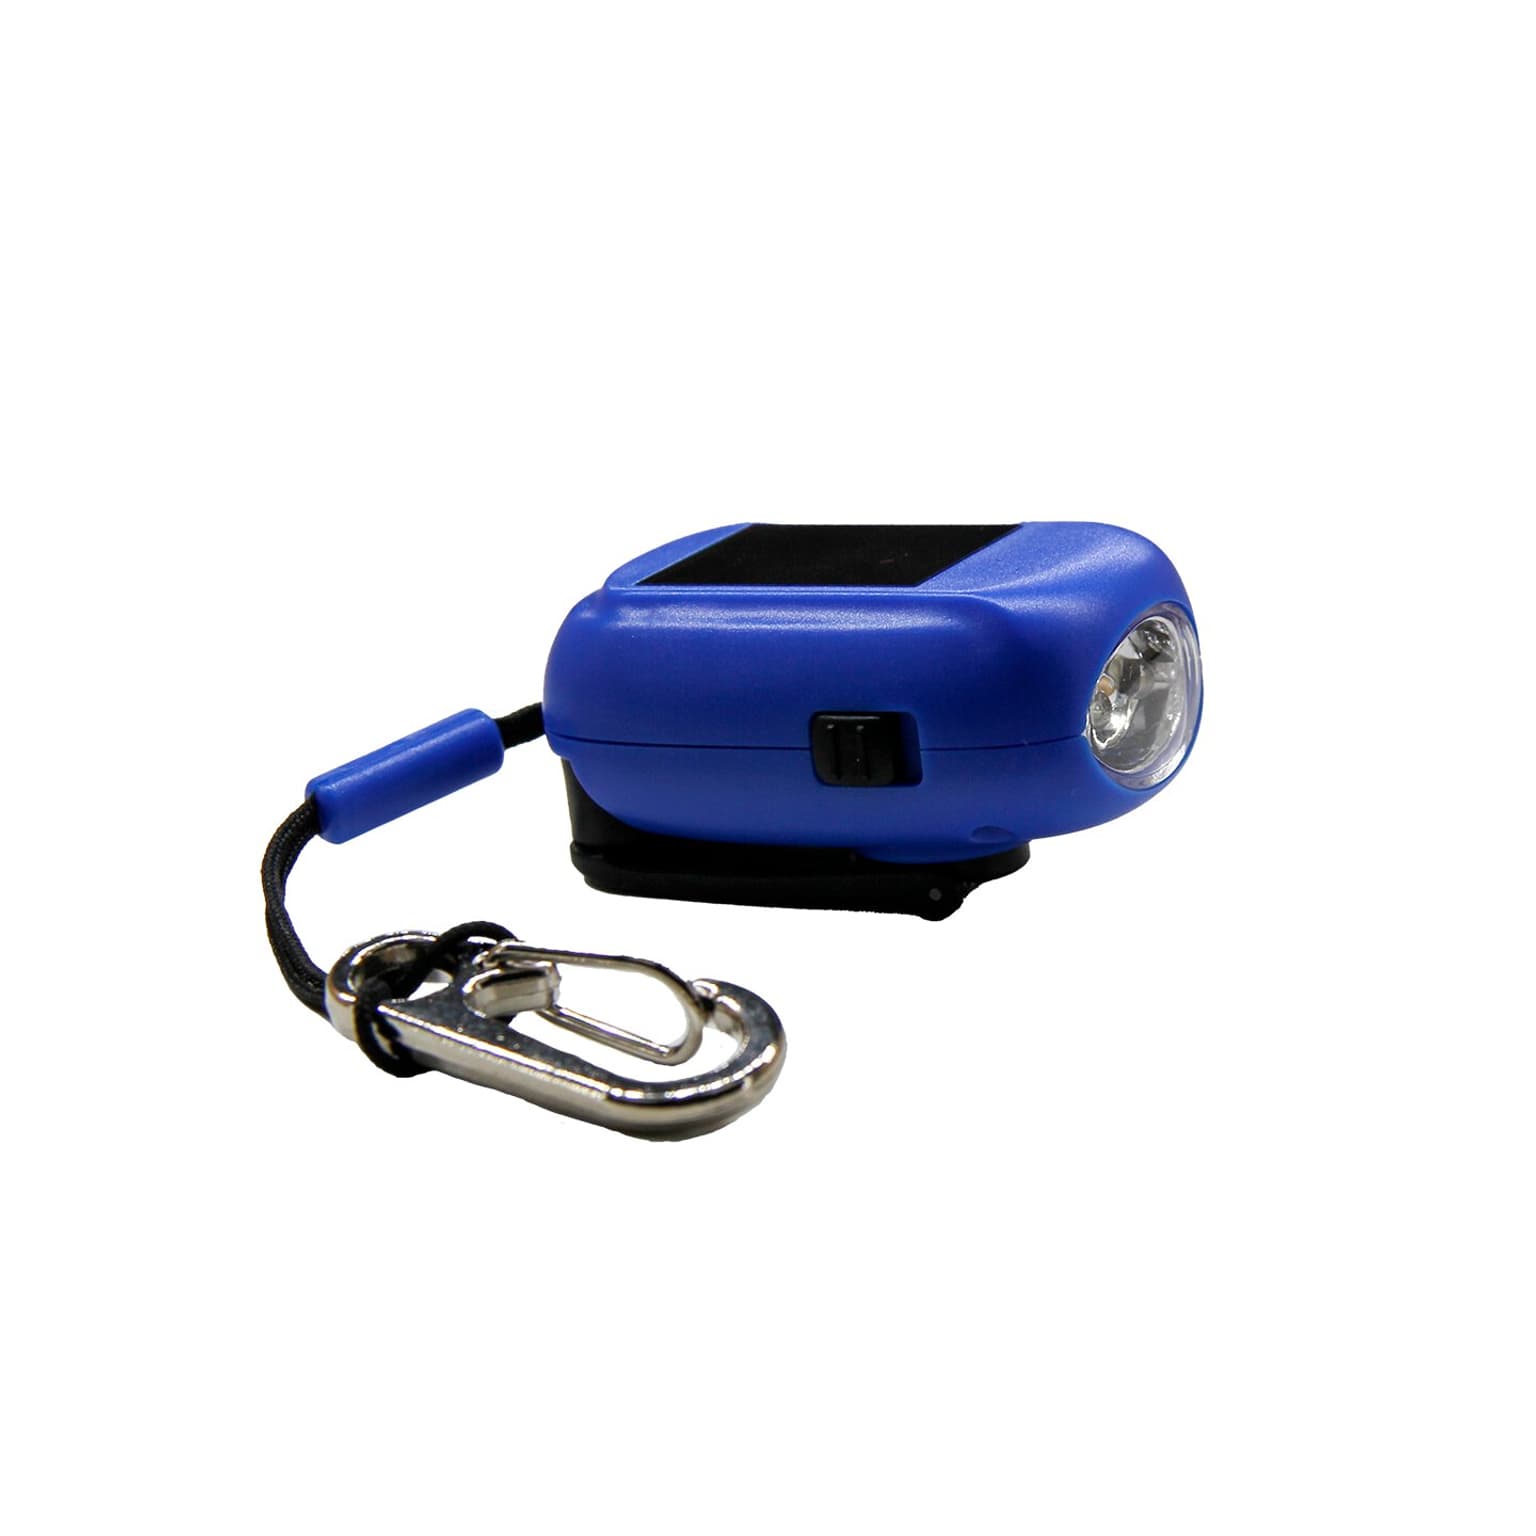 Essential Elements Essential Elements Mini Taschenlampe Recycled inkl. Karabiner Taschenlampe blu 4